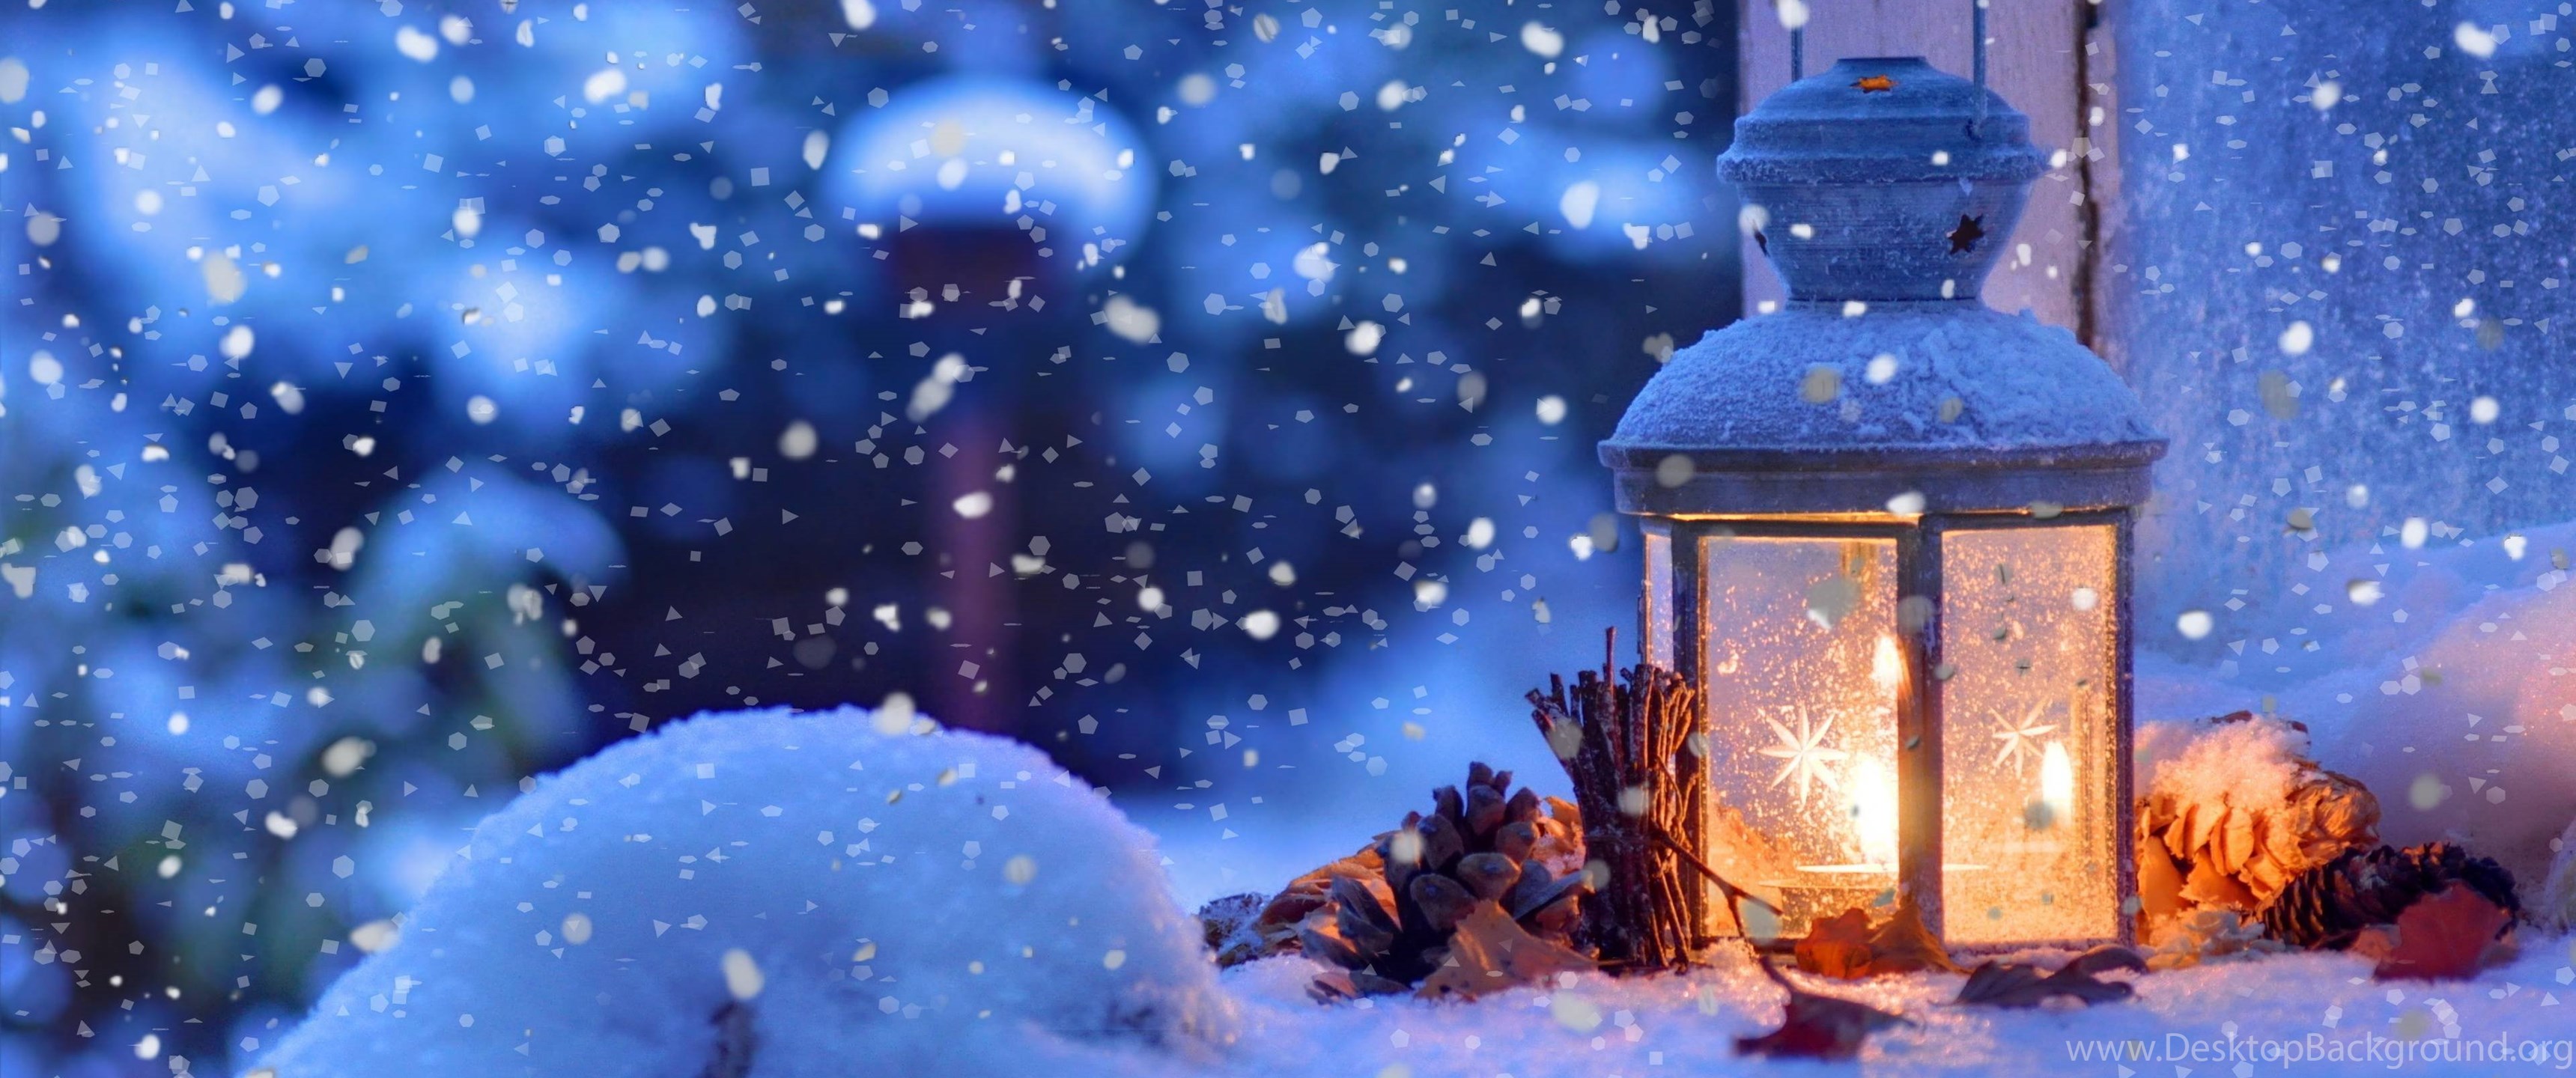 Cùng đón Giáng Sinh ấm áp bằng những hình nền đẹp lung linh nhất! Mùa đông năm nay, hãy để màn hình điện thoại của bạn trở thành một mảnh ghép quan trọng của không khí lễ hội đầy hứng khởi và niềm vui. Hình nền Giáng Sinh đầy sắc màu và rực rỡ sẽ đưa bạn đến một thế giới đầy sự bình yên và ấm áp.